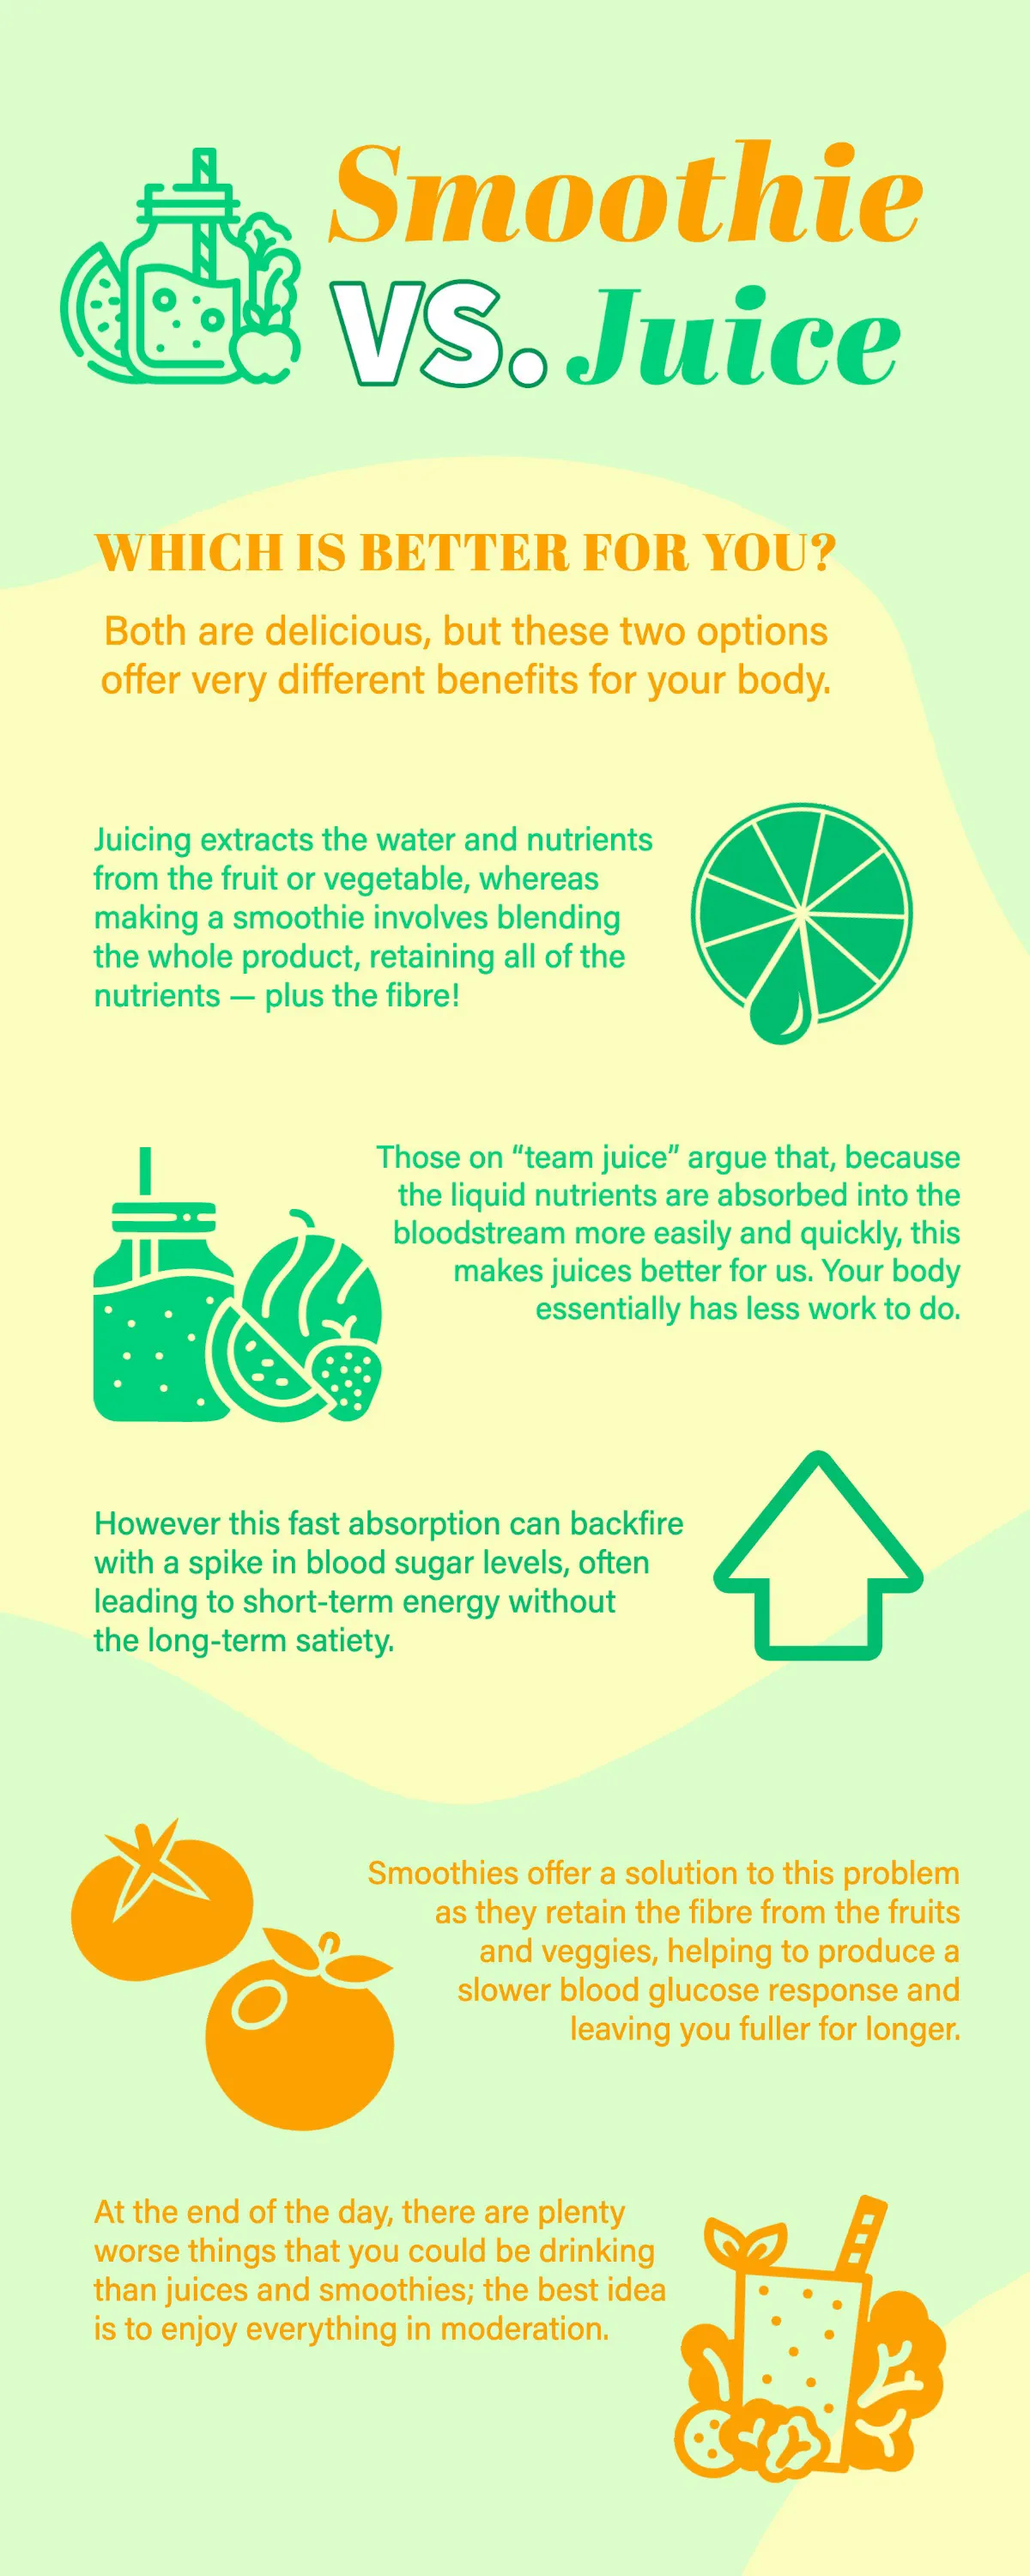 Green Yellow & Orange Smoothie vs. Juice Benefits Infographic